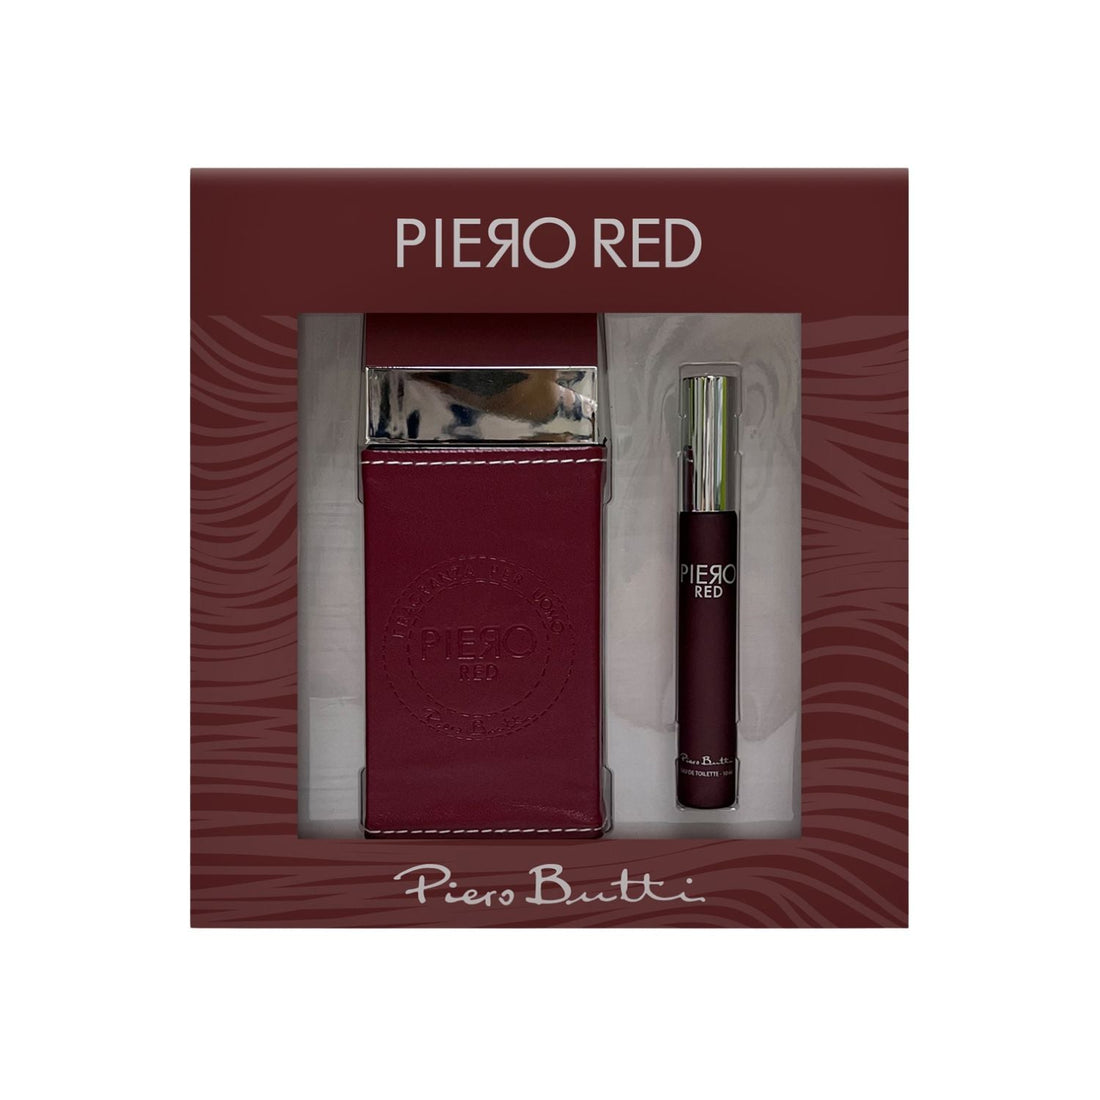 Set Perfume Piero Red EDT 100 ml + Perfumero Piero Butti